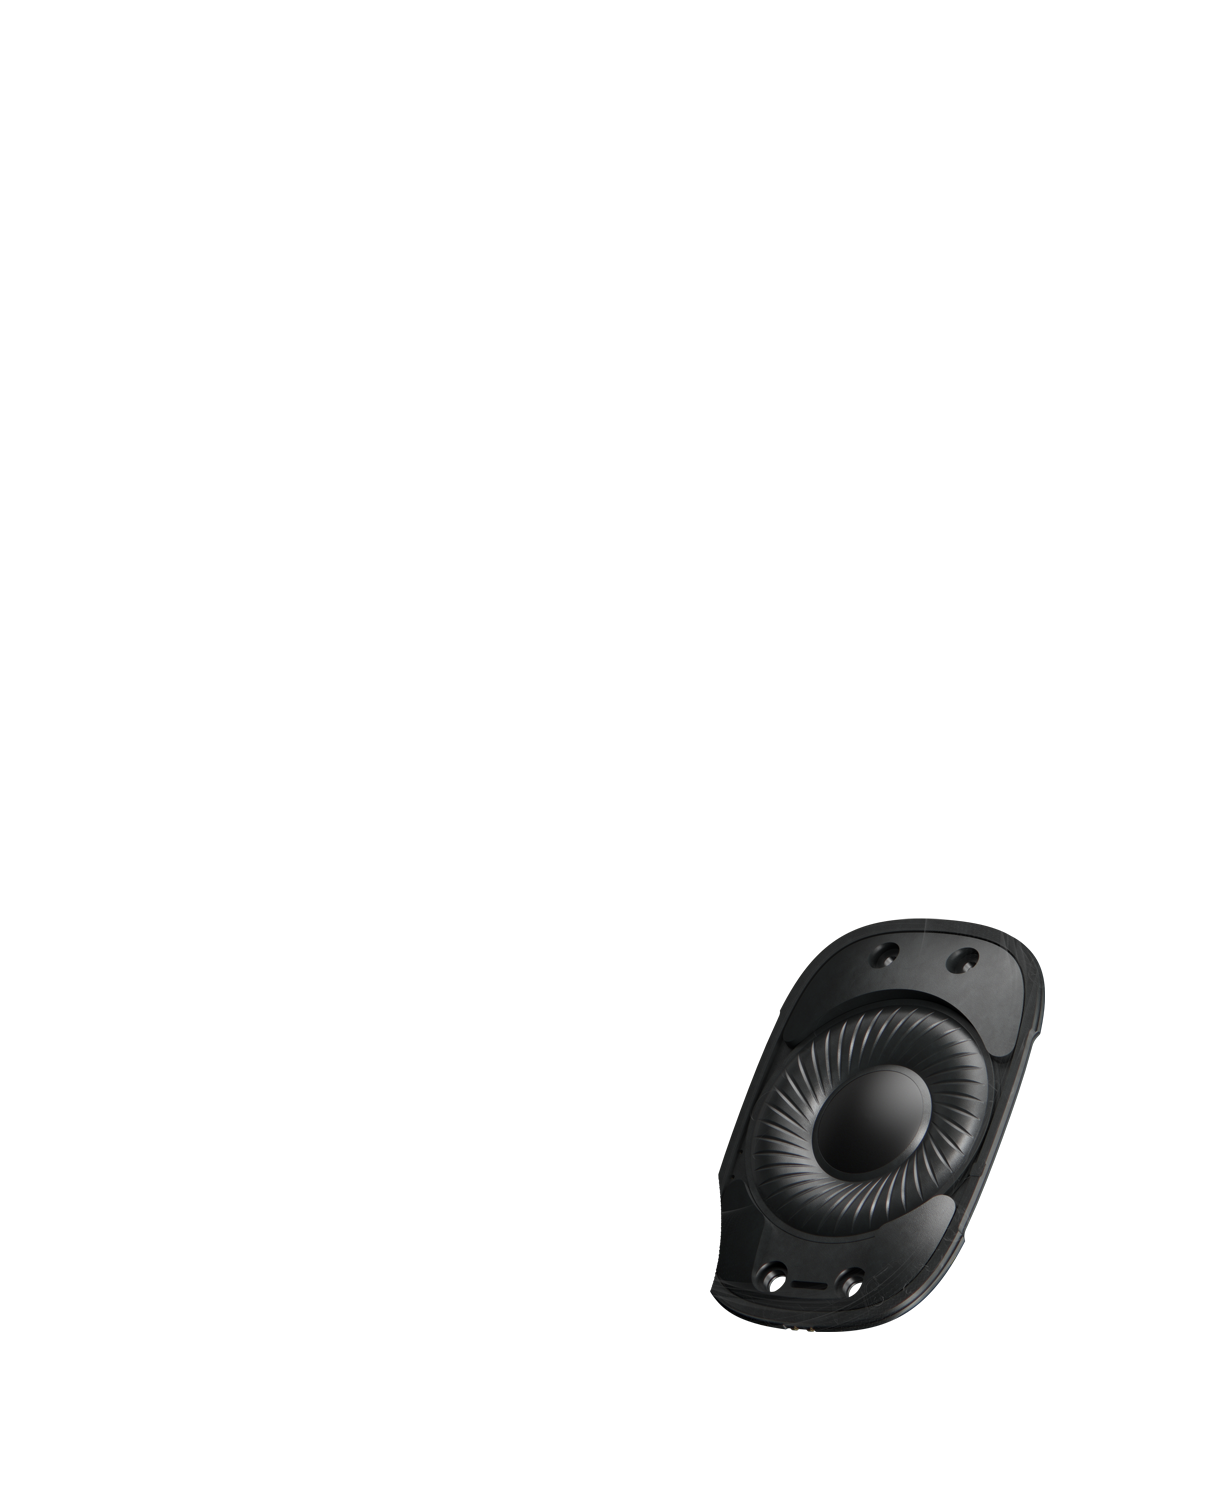 Зображення AirPods Max ізсередини, великий драйвер у центрі навушників відтворює звук високої якості.